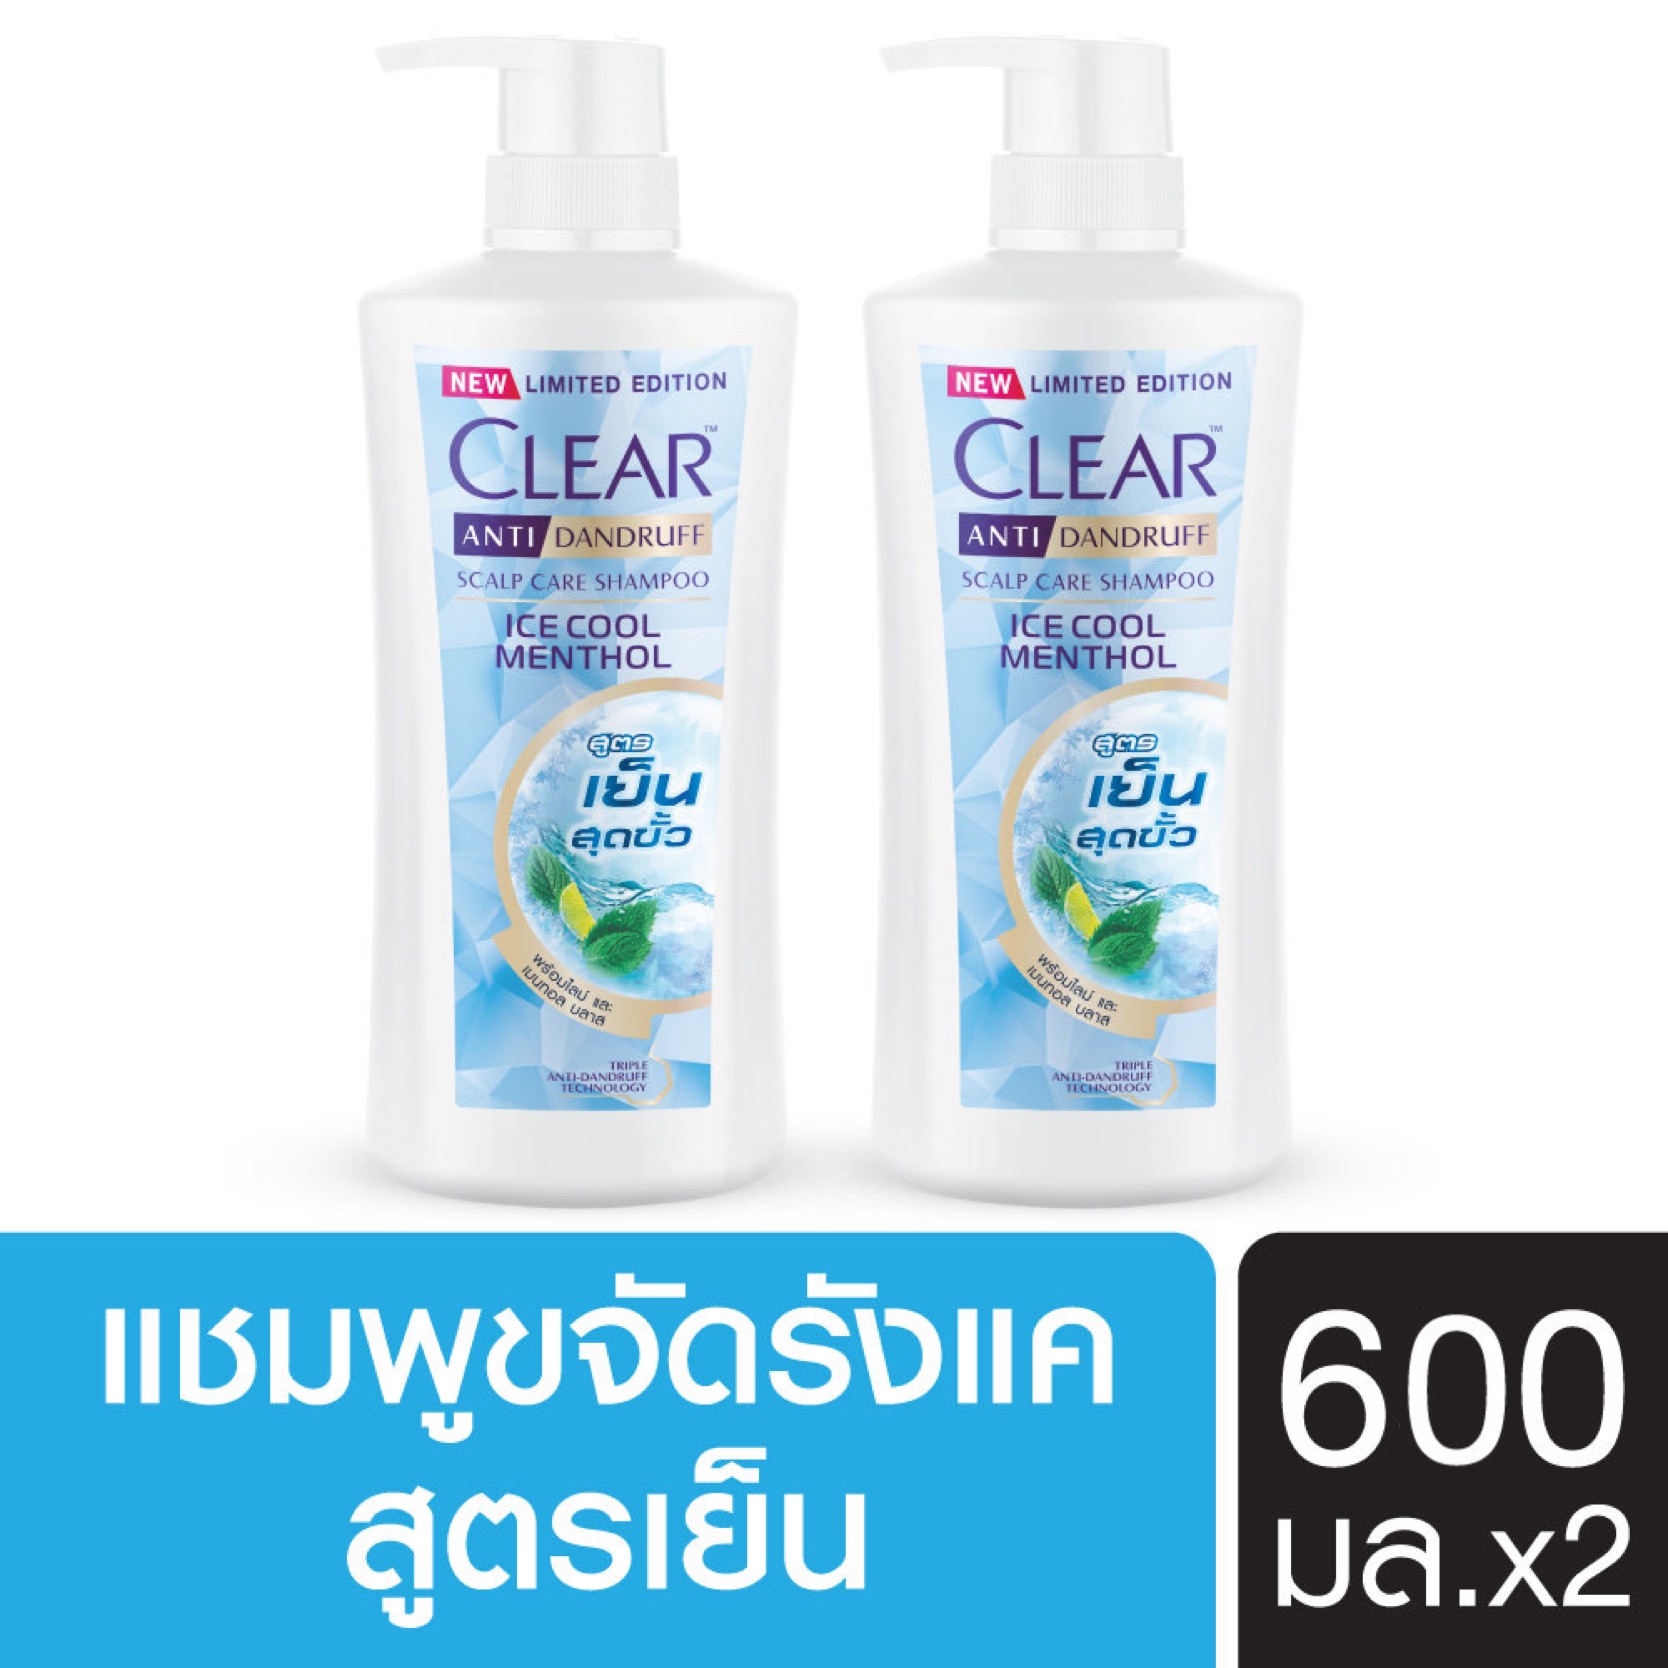 [ส่งฟรี] เคลียร์ ไอซ์ คูล เมนทอล แชมพูขจัดรังแค สีฟ้า สูตรเย็น สดชื่น 600 มล. x2 Clear Ice Cool Menthol Anti dandruff Shampoo Light Blue 600 ml. x2( ยาสระผม ครีมสระผม แชมพู shampoo ) ของแท้